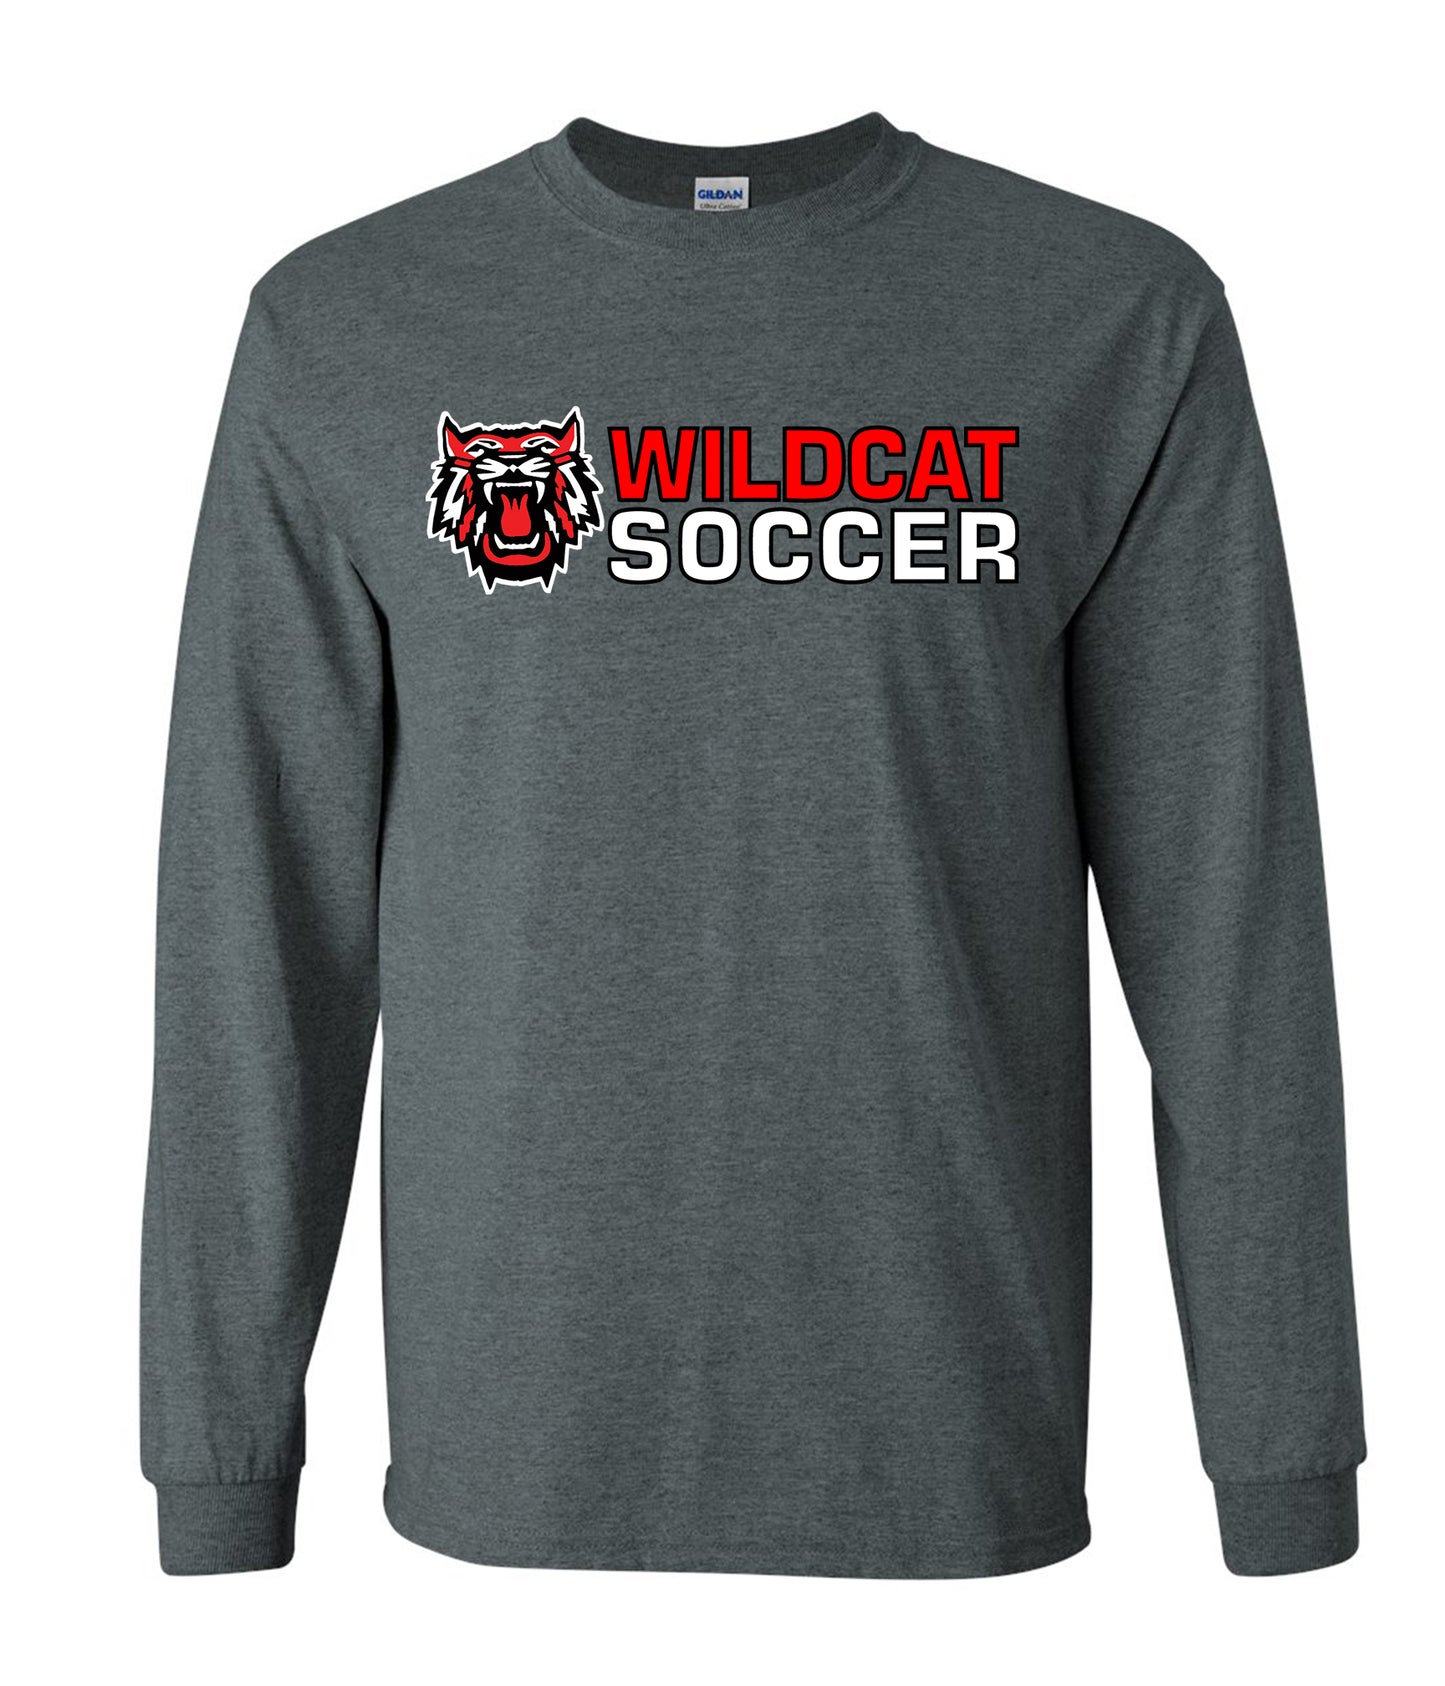 Wildcat Soccer